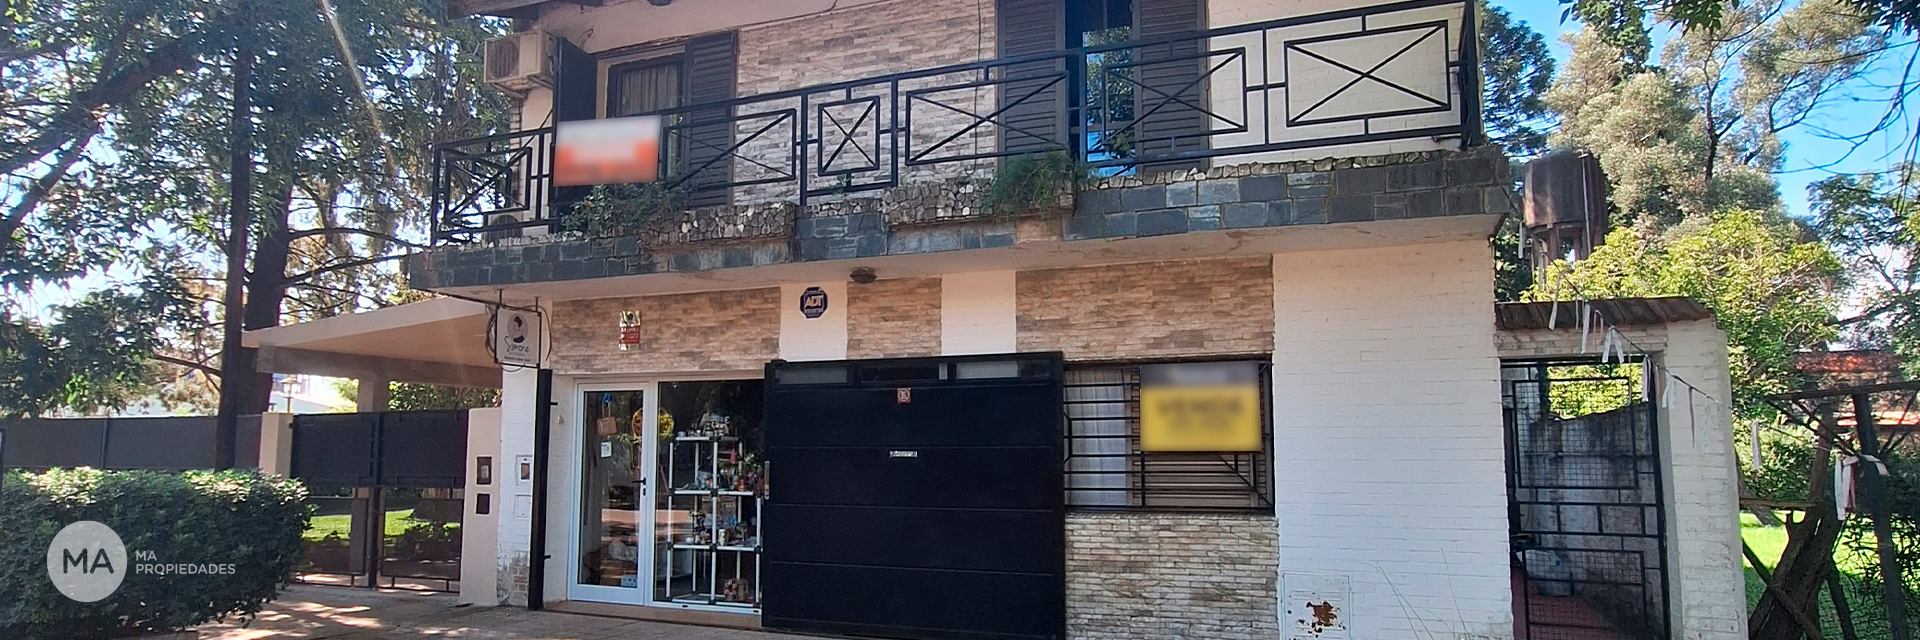 Casa y local comercial - Sargento Cabral 1500 - Funes | Venta